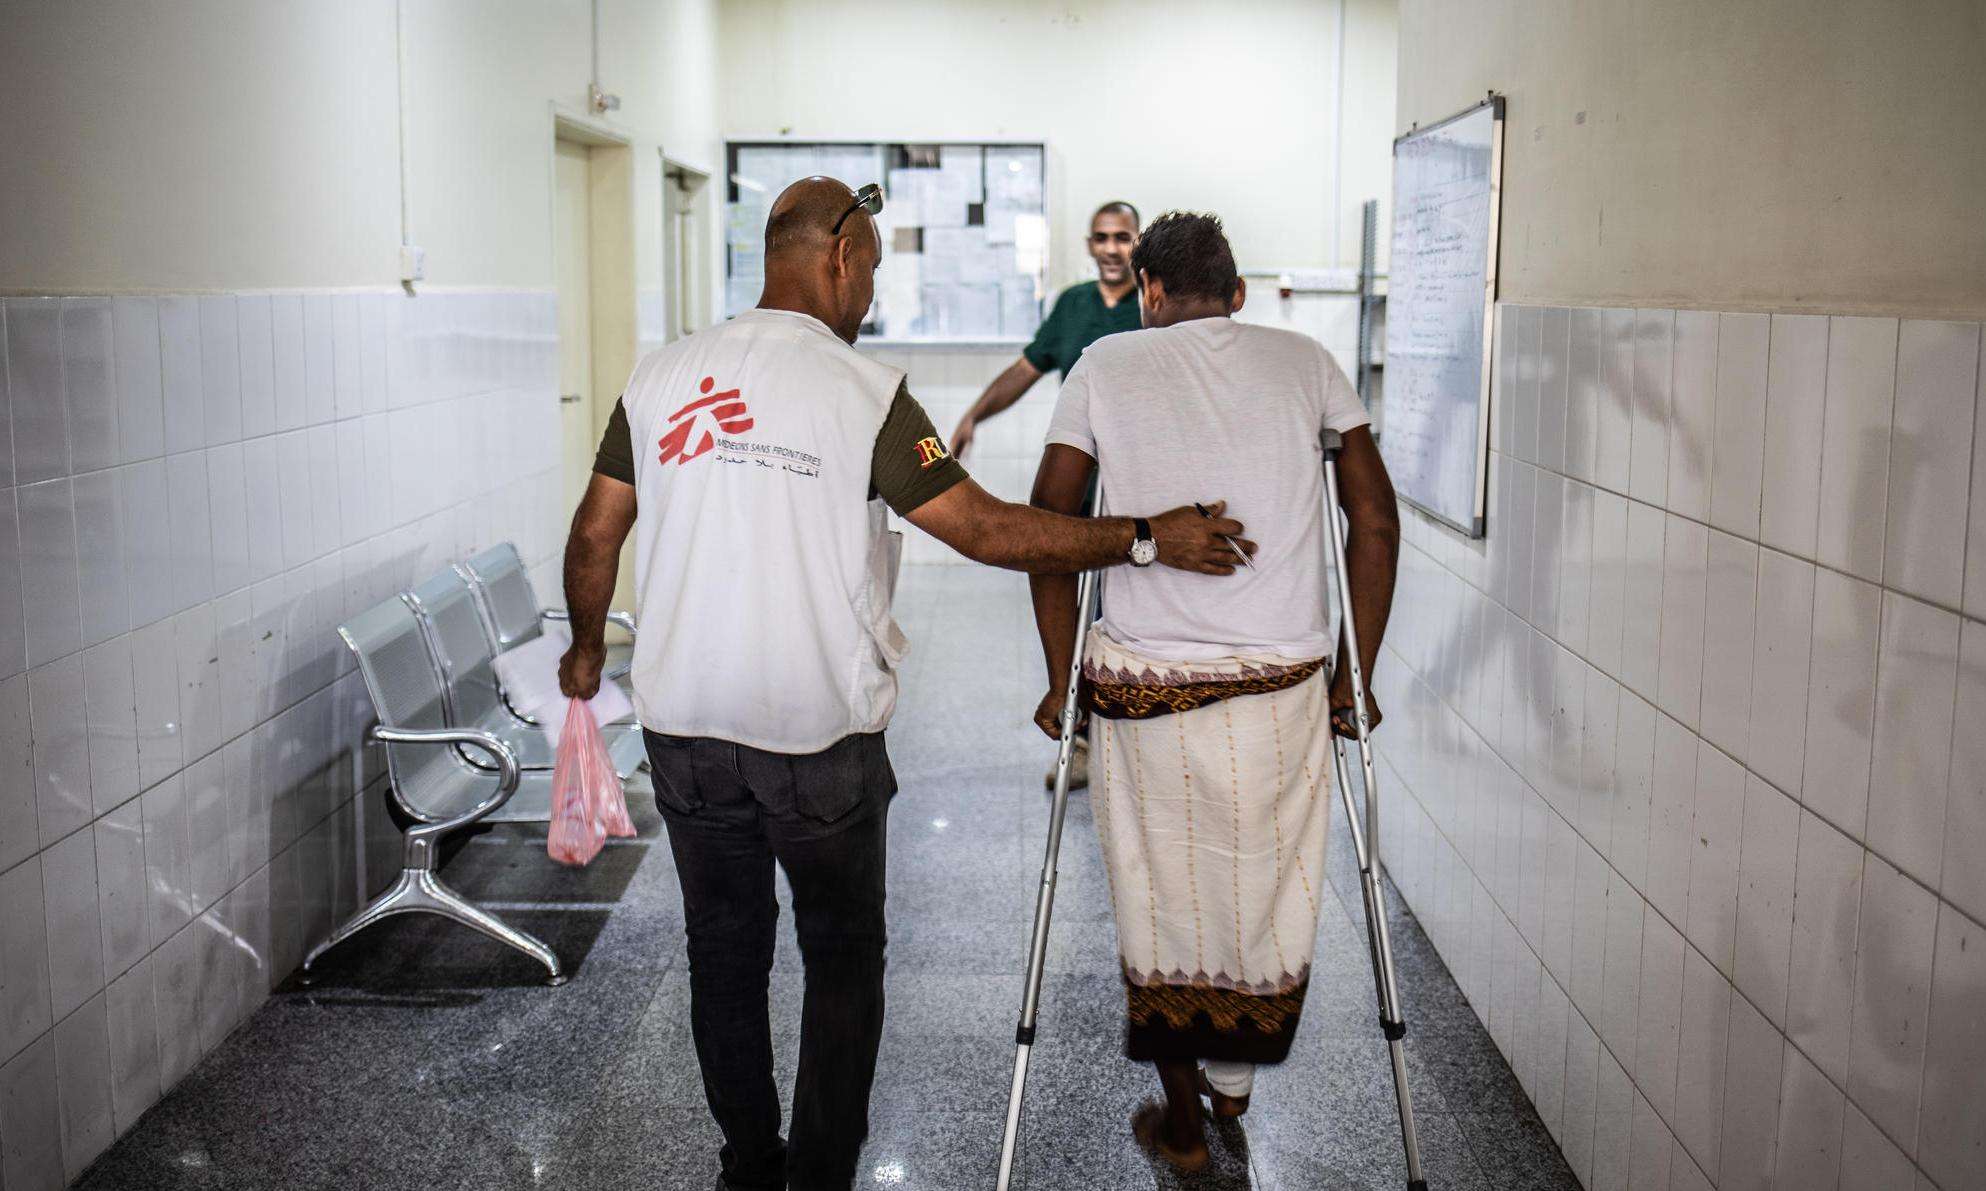 Inside MSF's trauma hospital in Aden, Yemen.  